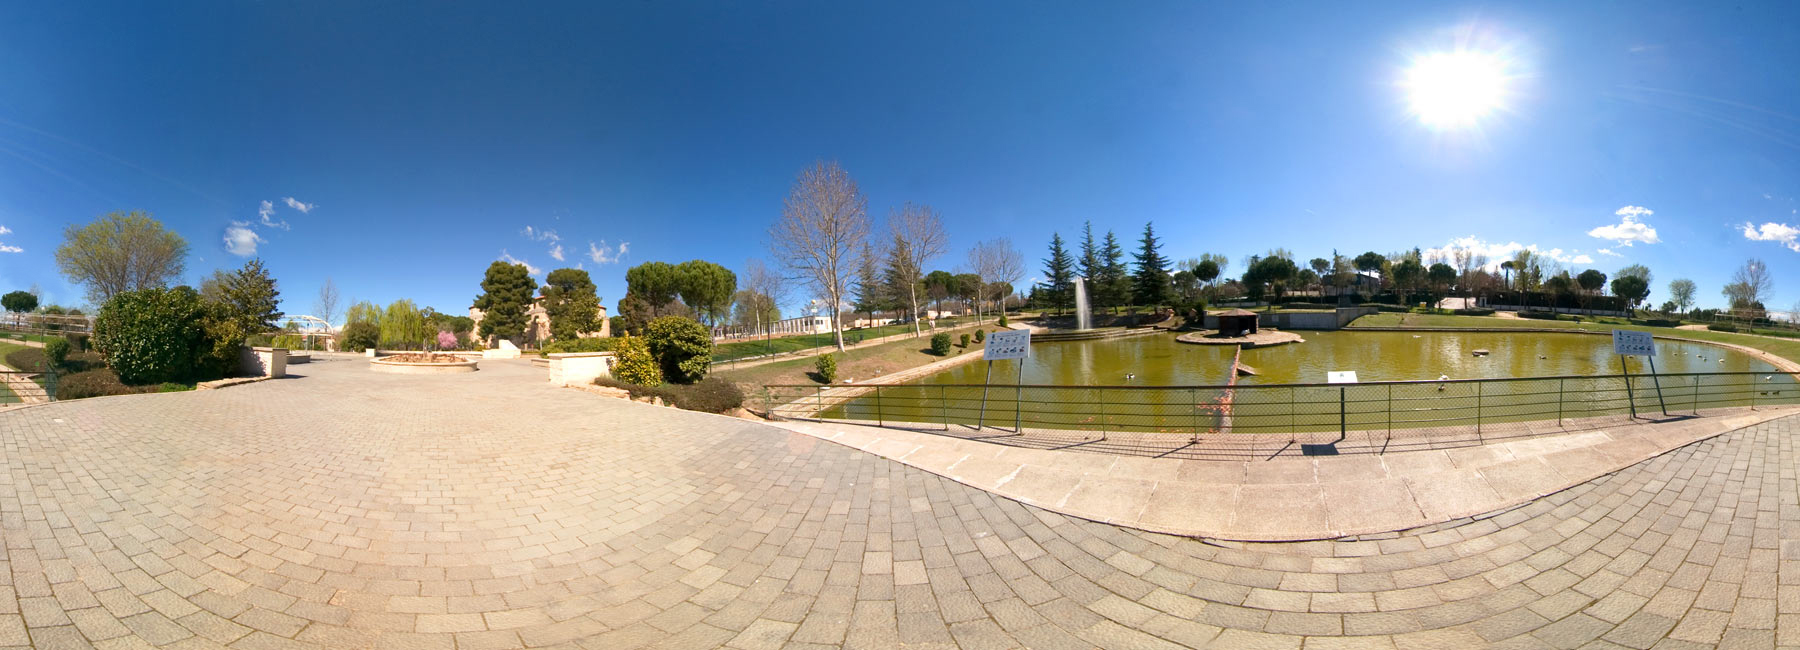 Visita virtual del Parque El Castillo